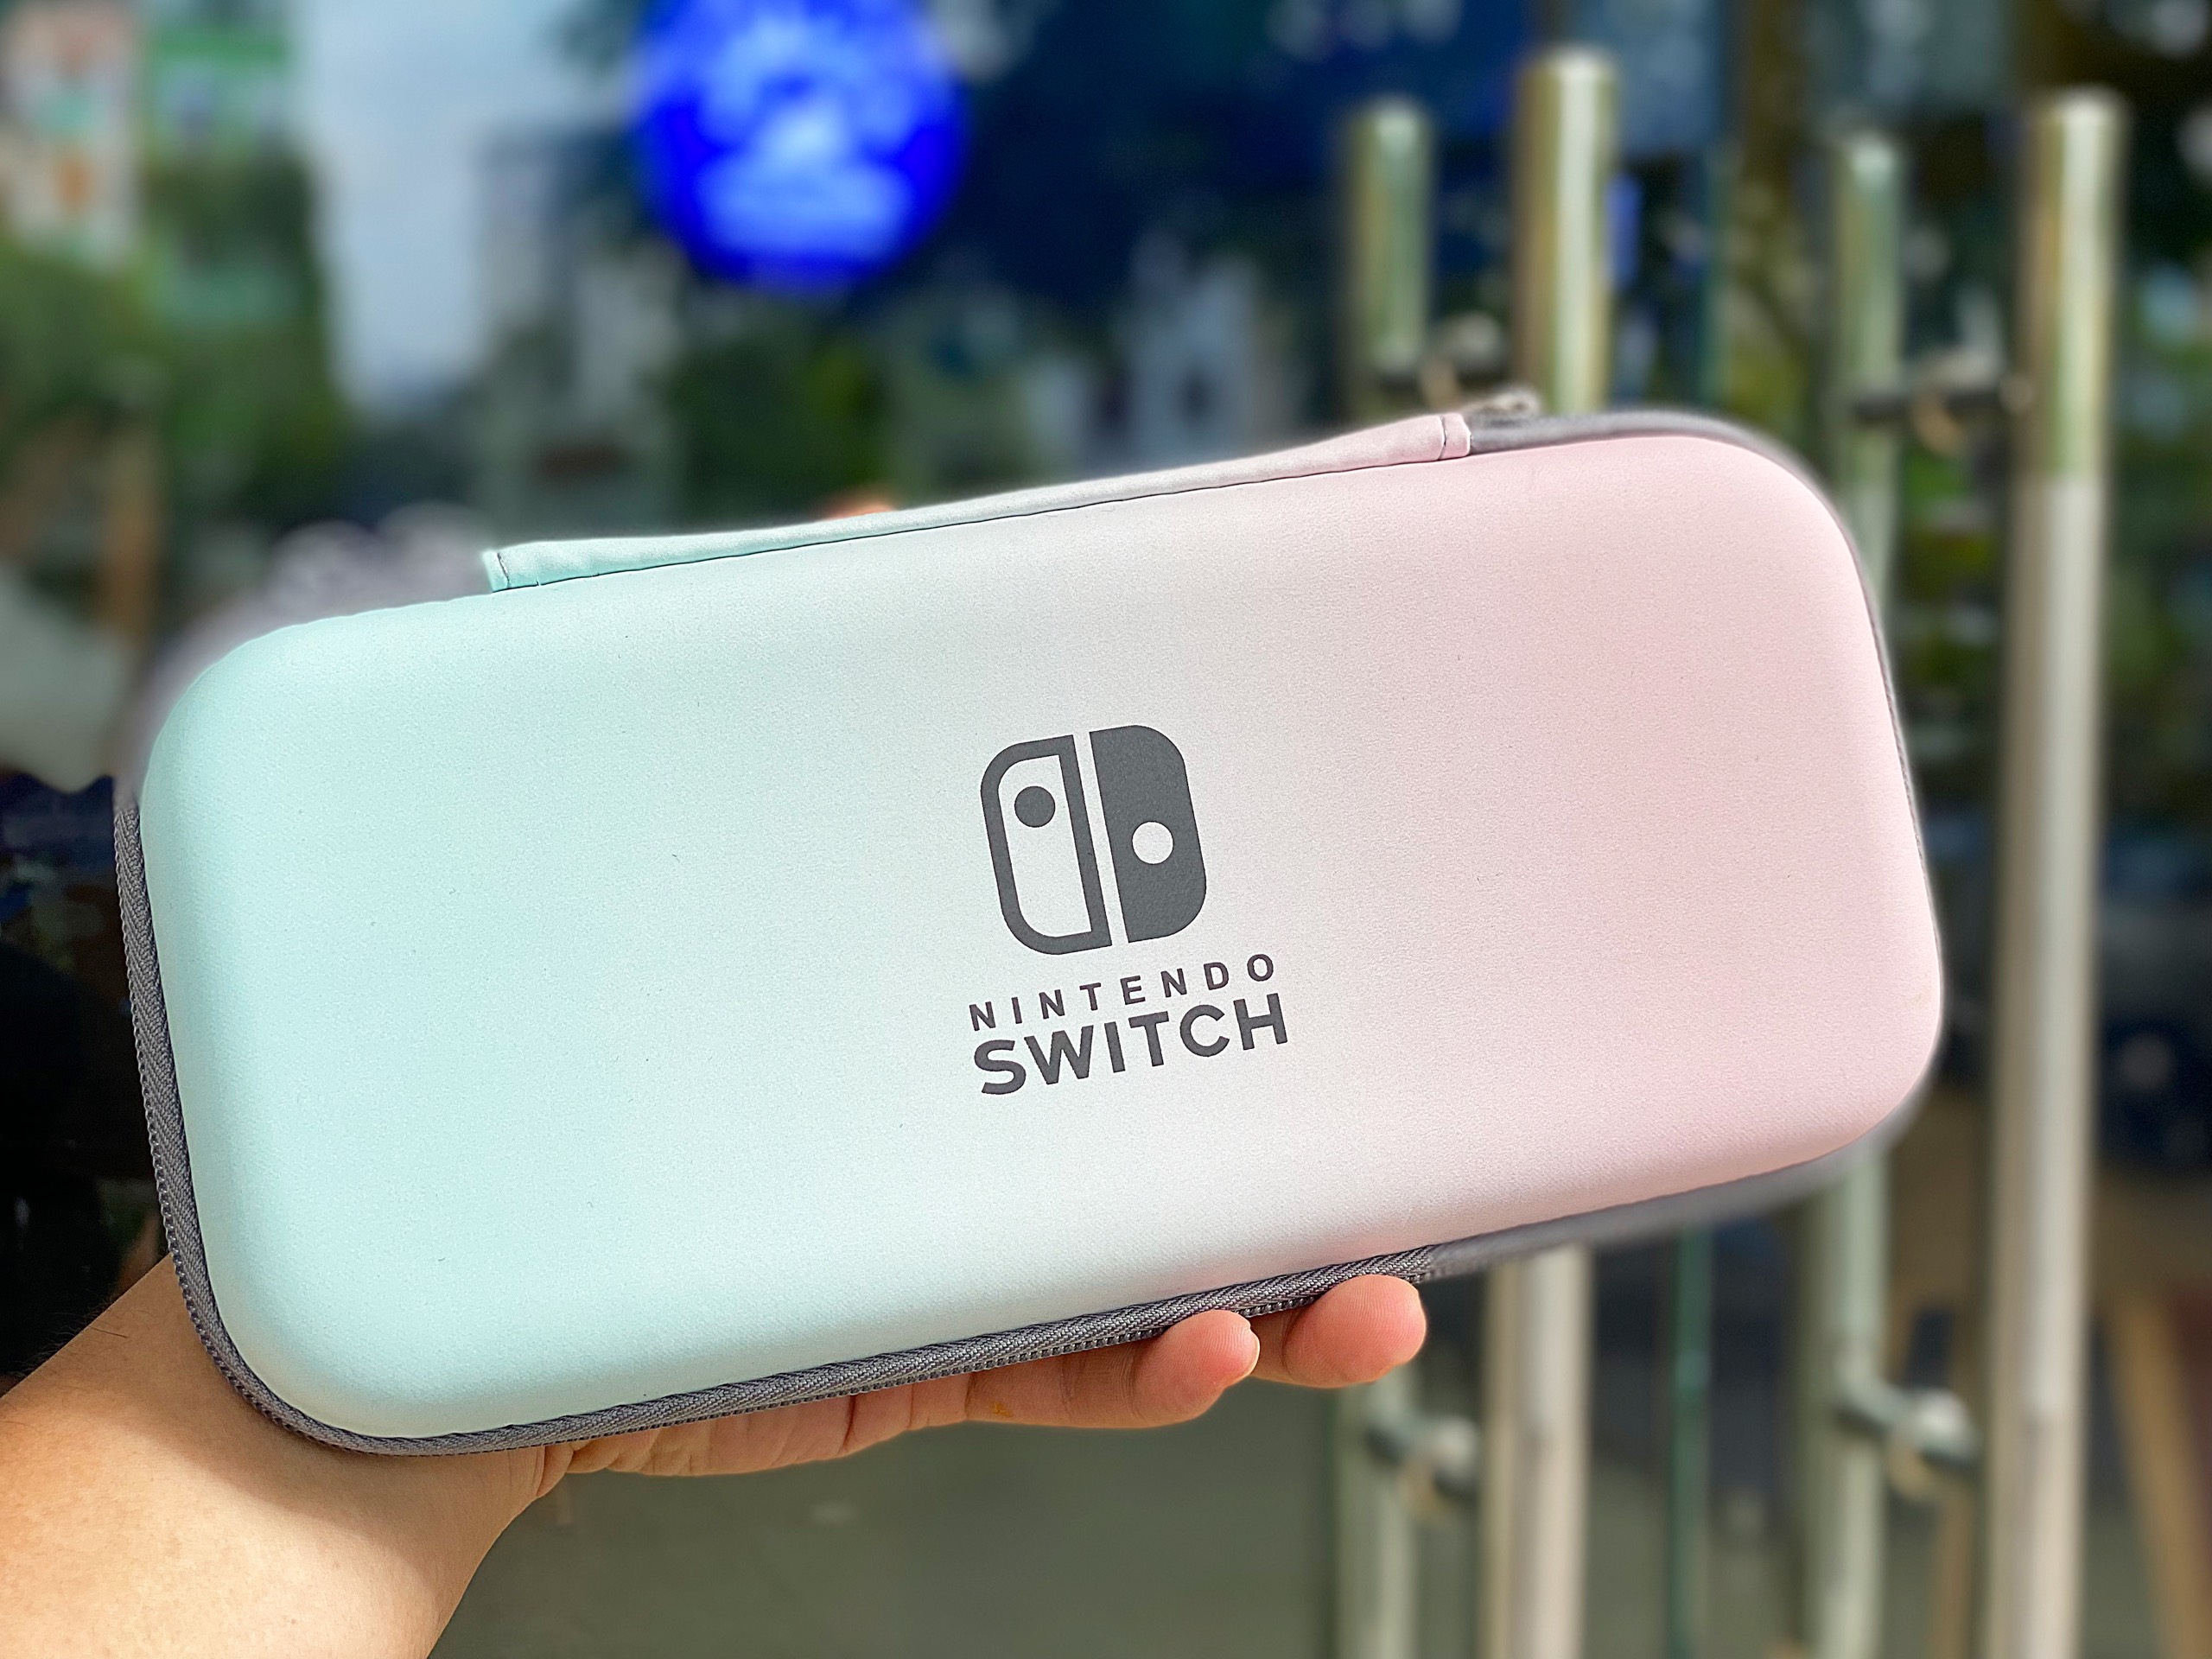 Bao đựng máy Nintendo Switch V1 / V2 / OLED Galaxy Xanh - hồng